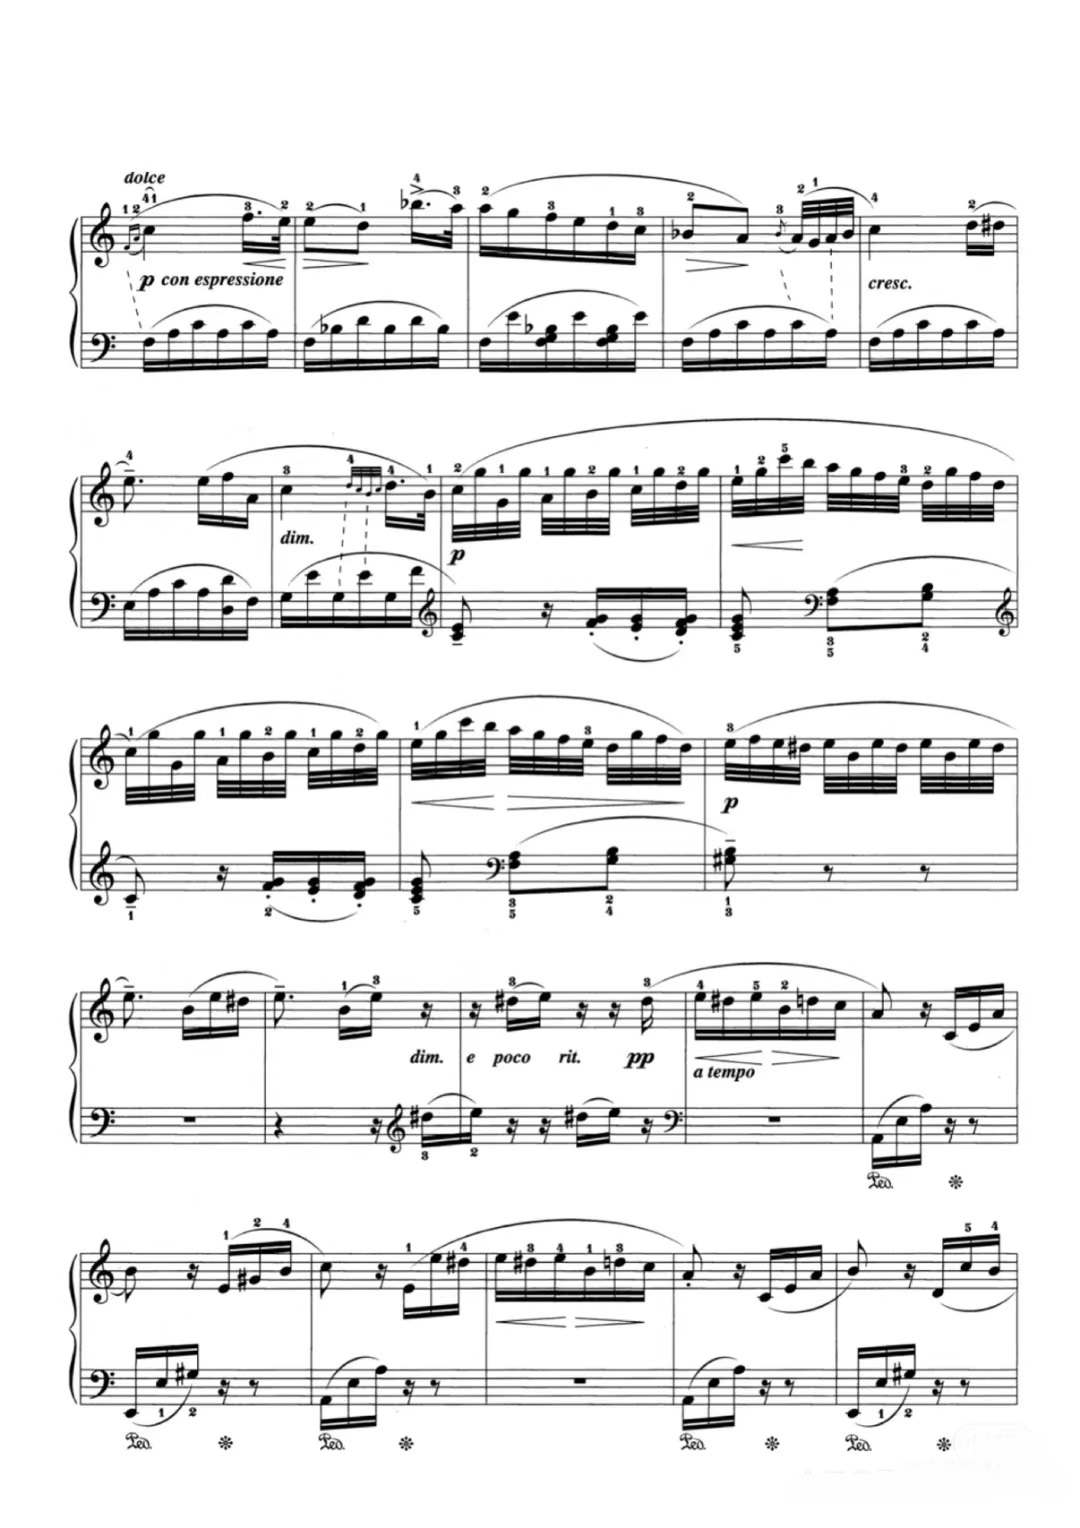 【献给爱丽丝】的钢琴谱简谱 - 贝多芬